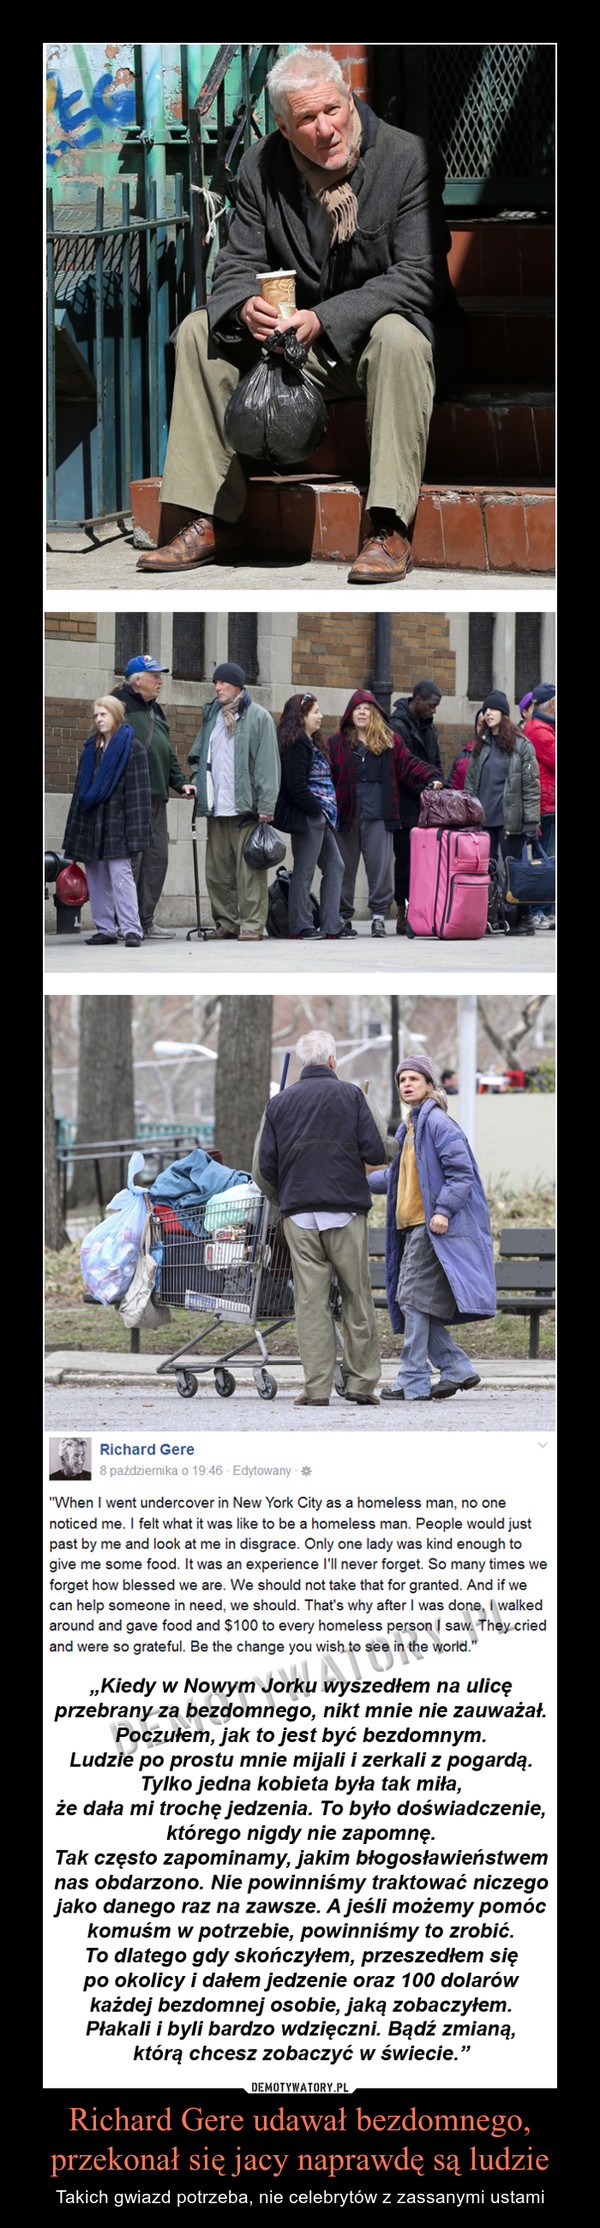 Richard Gere udawał bezdomnego,
przekonał się jacy naprawdę są ludzie